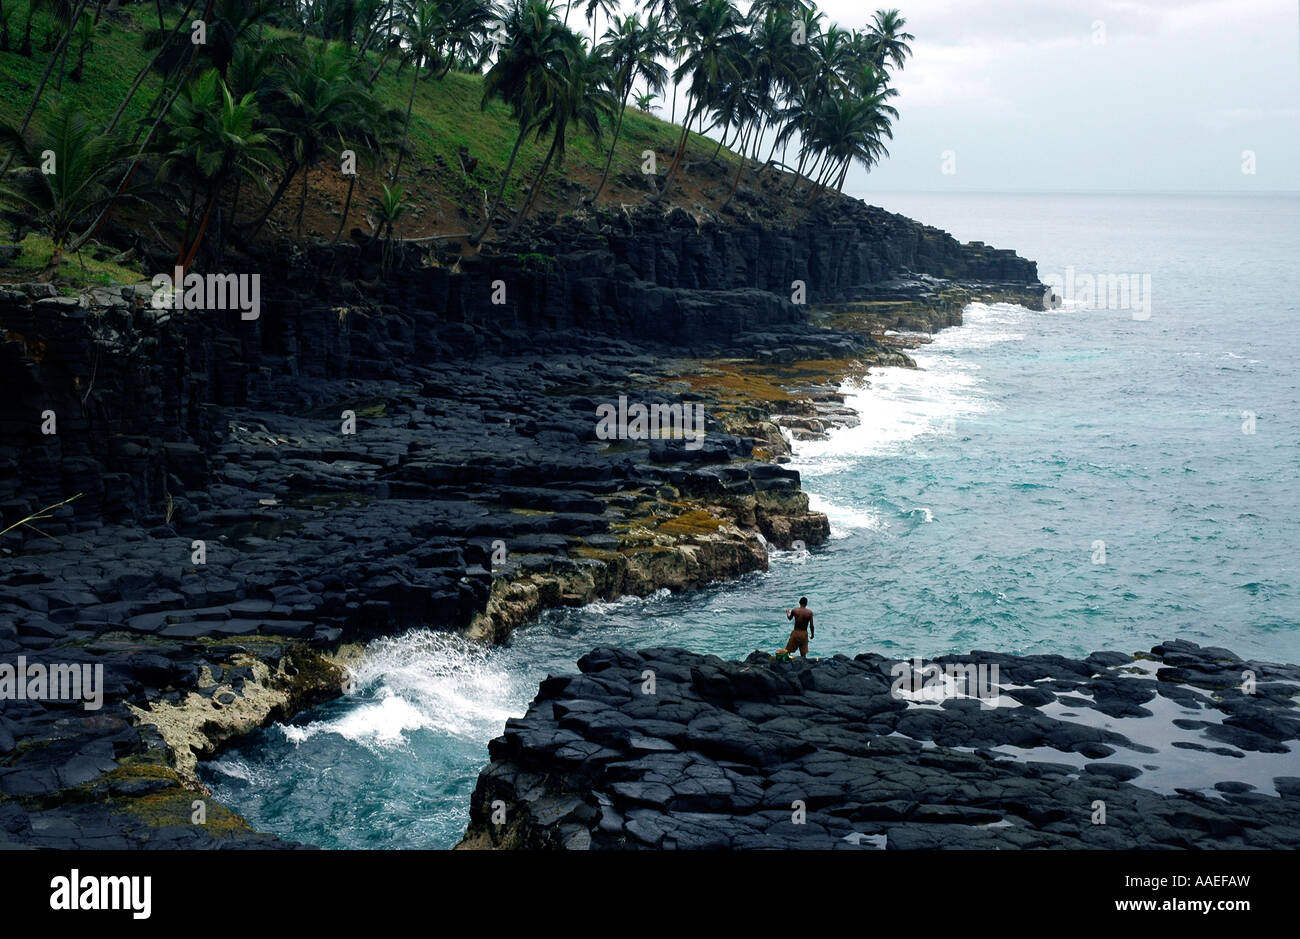 La côte de São Tomé comprend des sections rocheuses magnifiques qui attirent les pêcheurs Banque D'Images